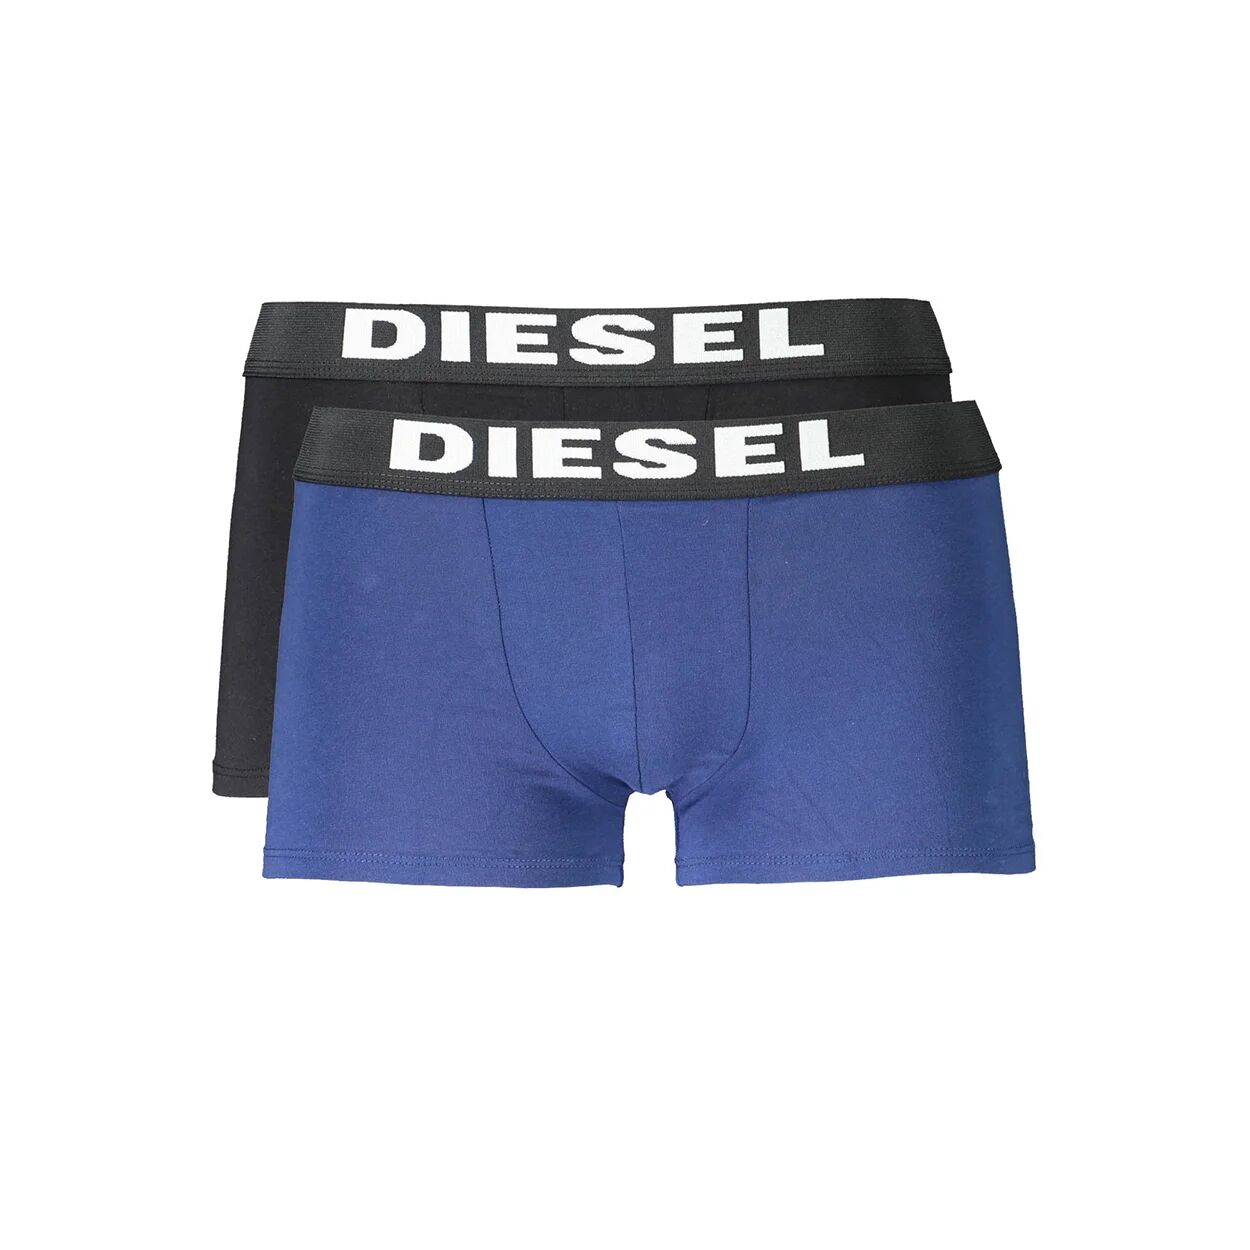 Diesel Confezione da 2 pz boxer parigamba Diesel con elastico logato, nero e blu